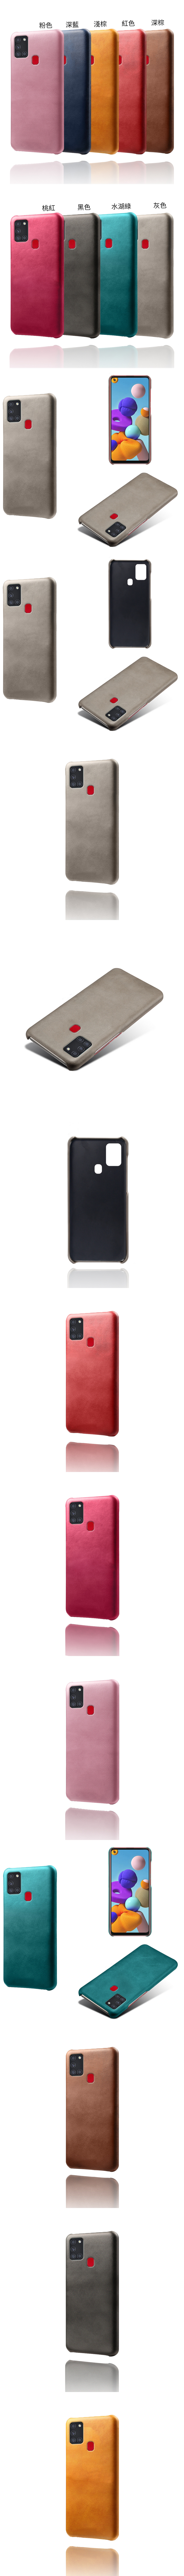 Realme X50 Pro 5G 皮革保護殼(PLAIN) - 牛皮仿真皮紋單色背蓋素色多色手機殼保護套手機套